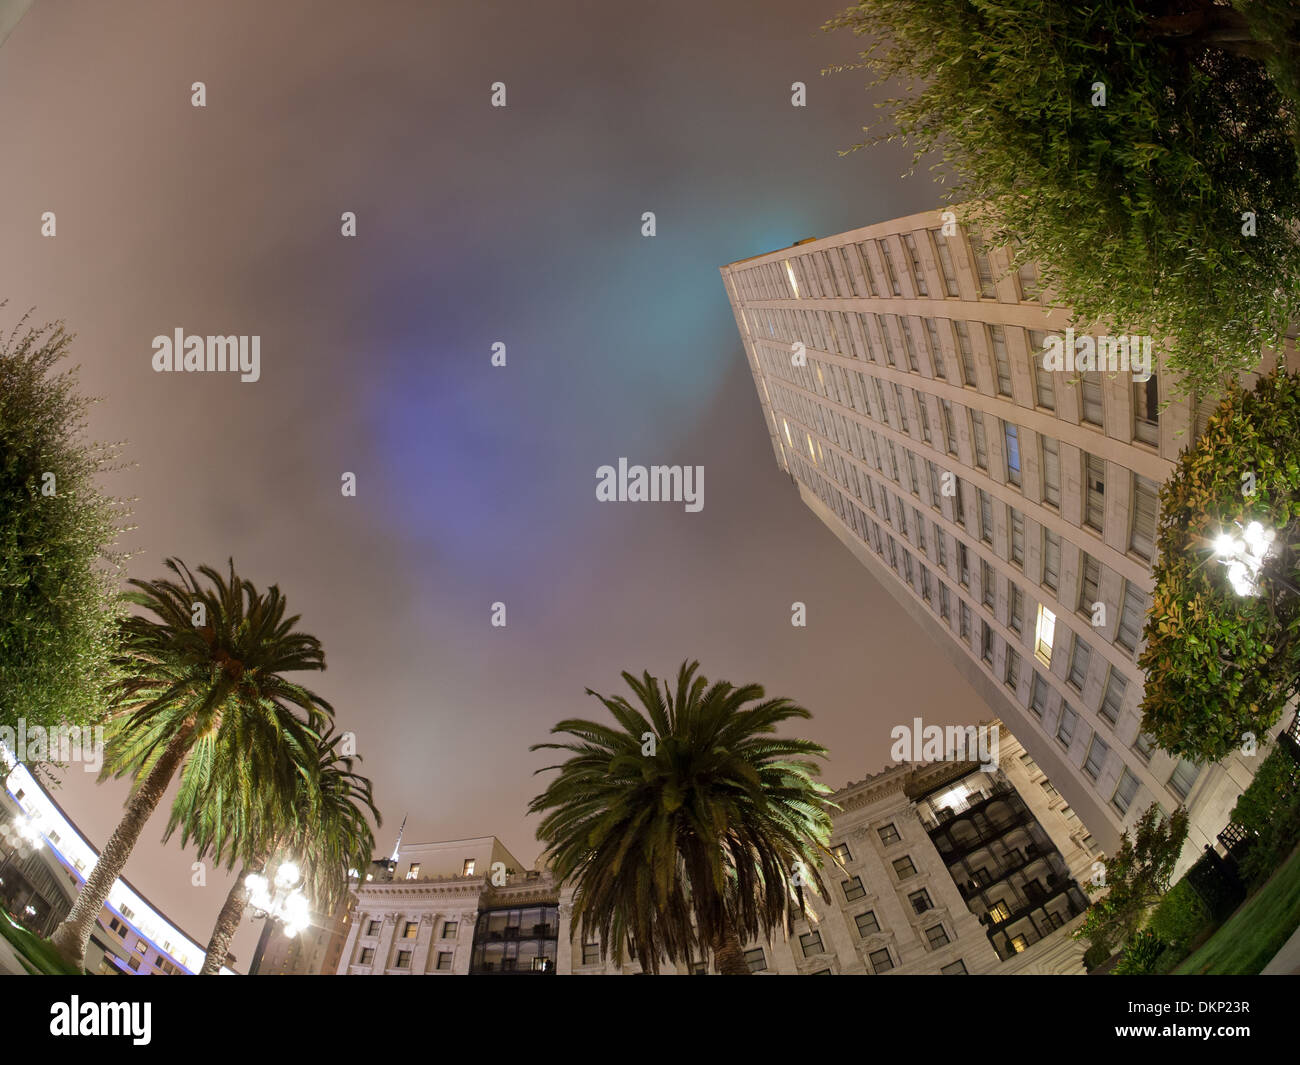 Eine Nacht, fisheye Blick auf das Fairmont San Francisco Hotel vom Dachgarten des Hotels gesehen. Stockfoto